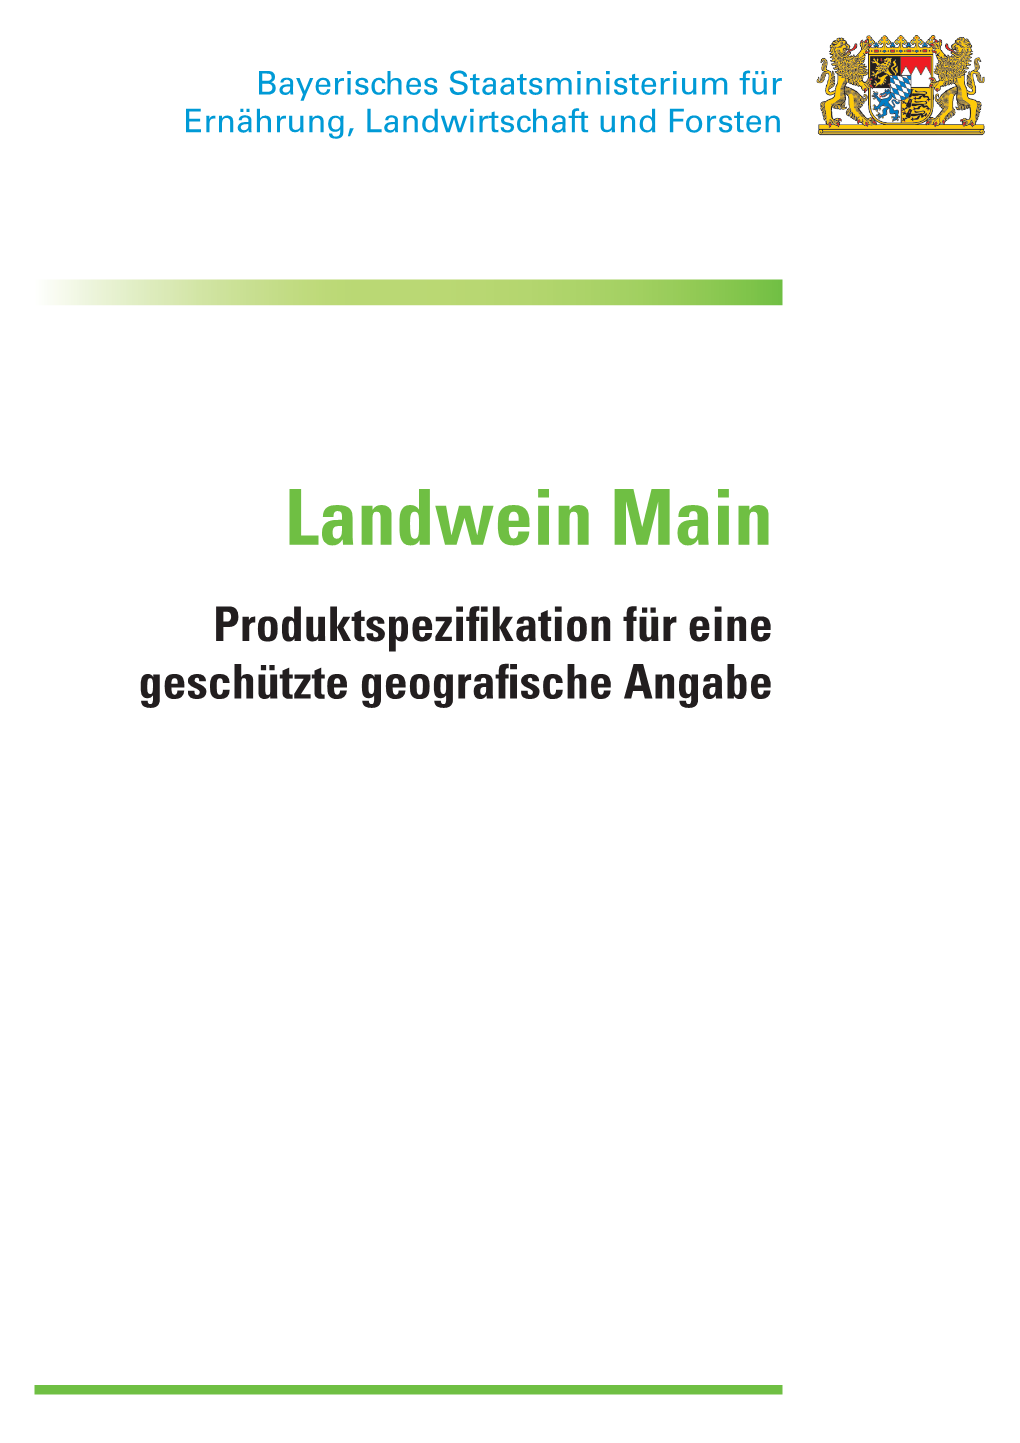 Gga Landwein Main 111214